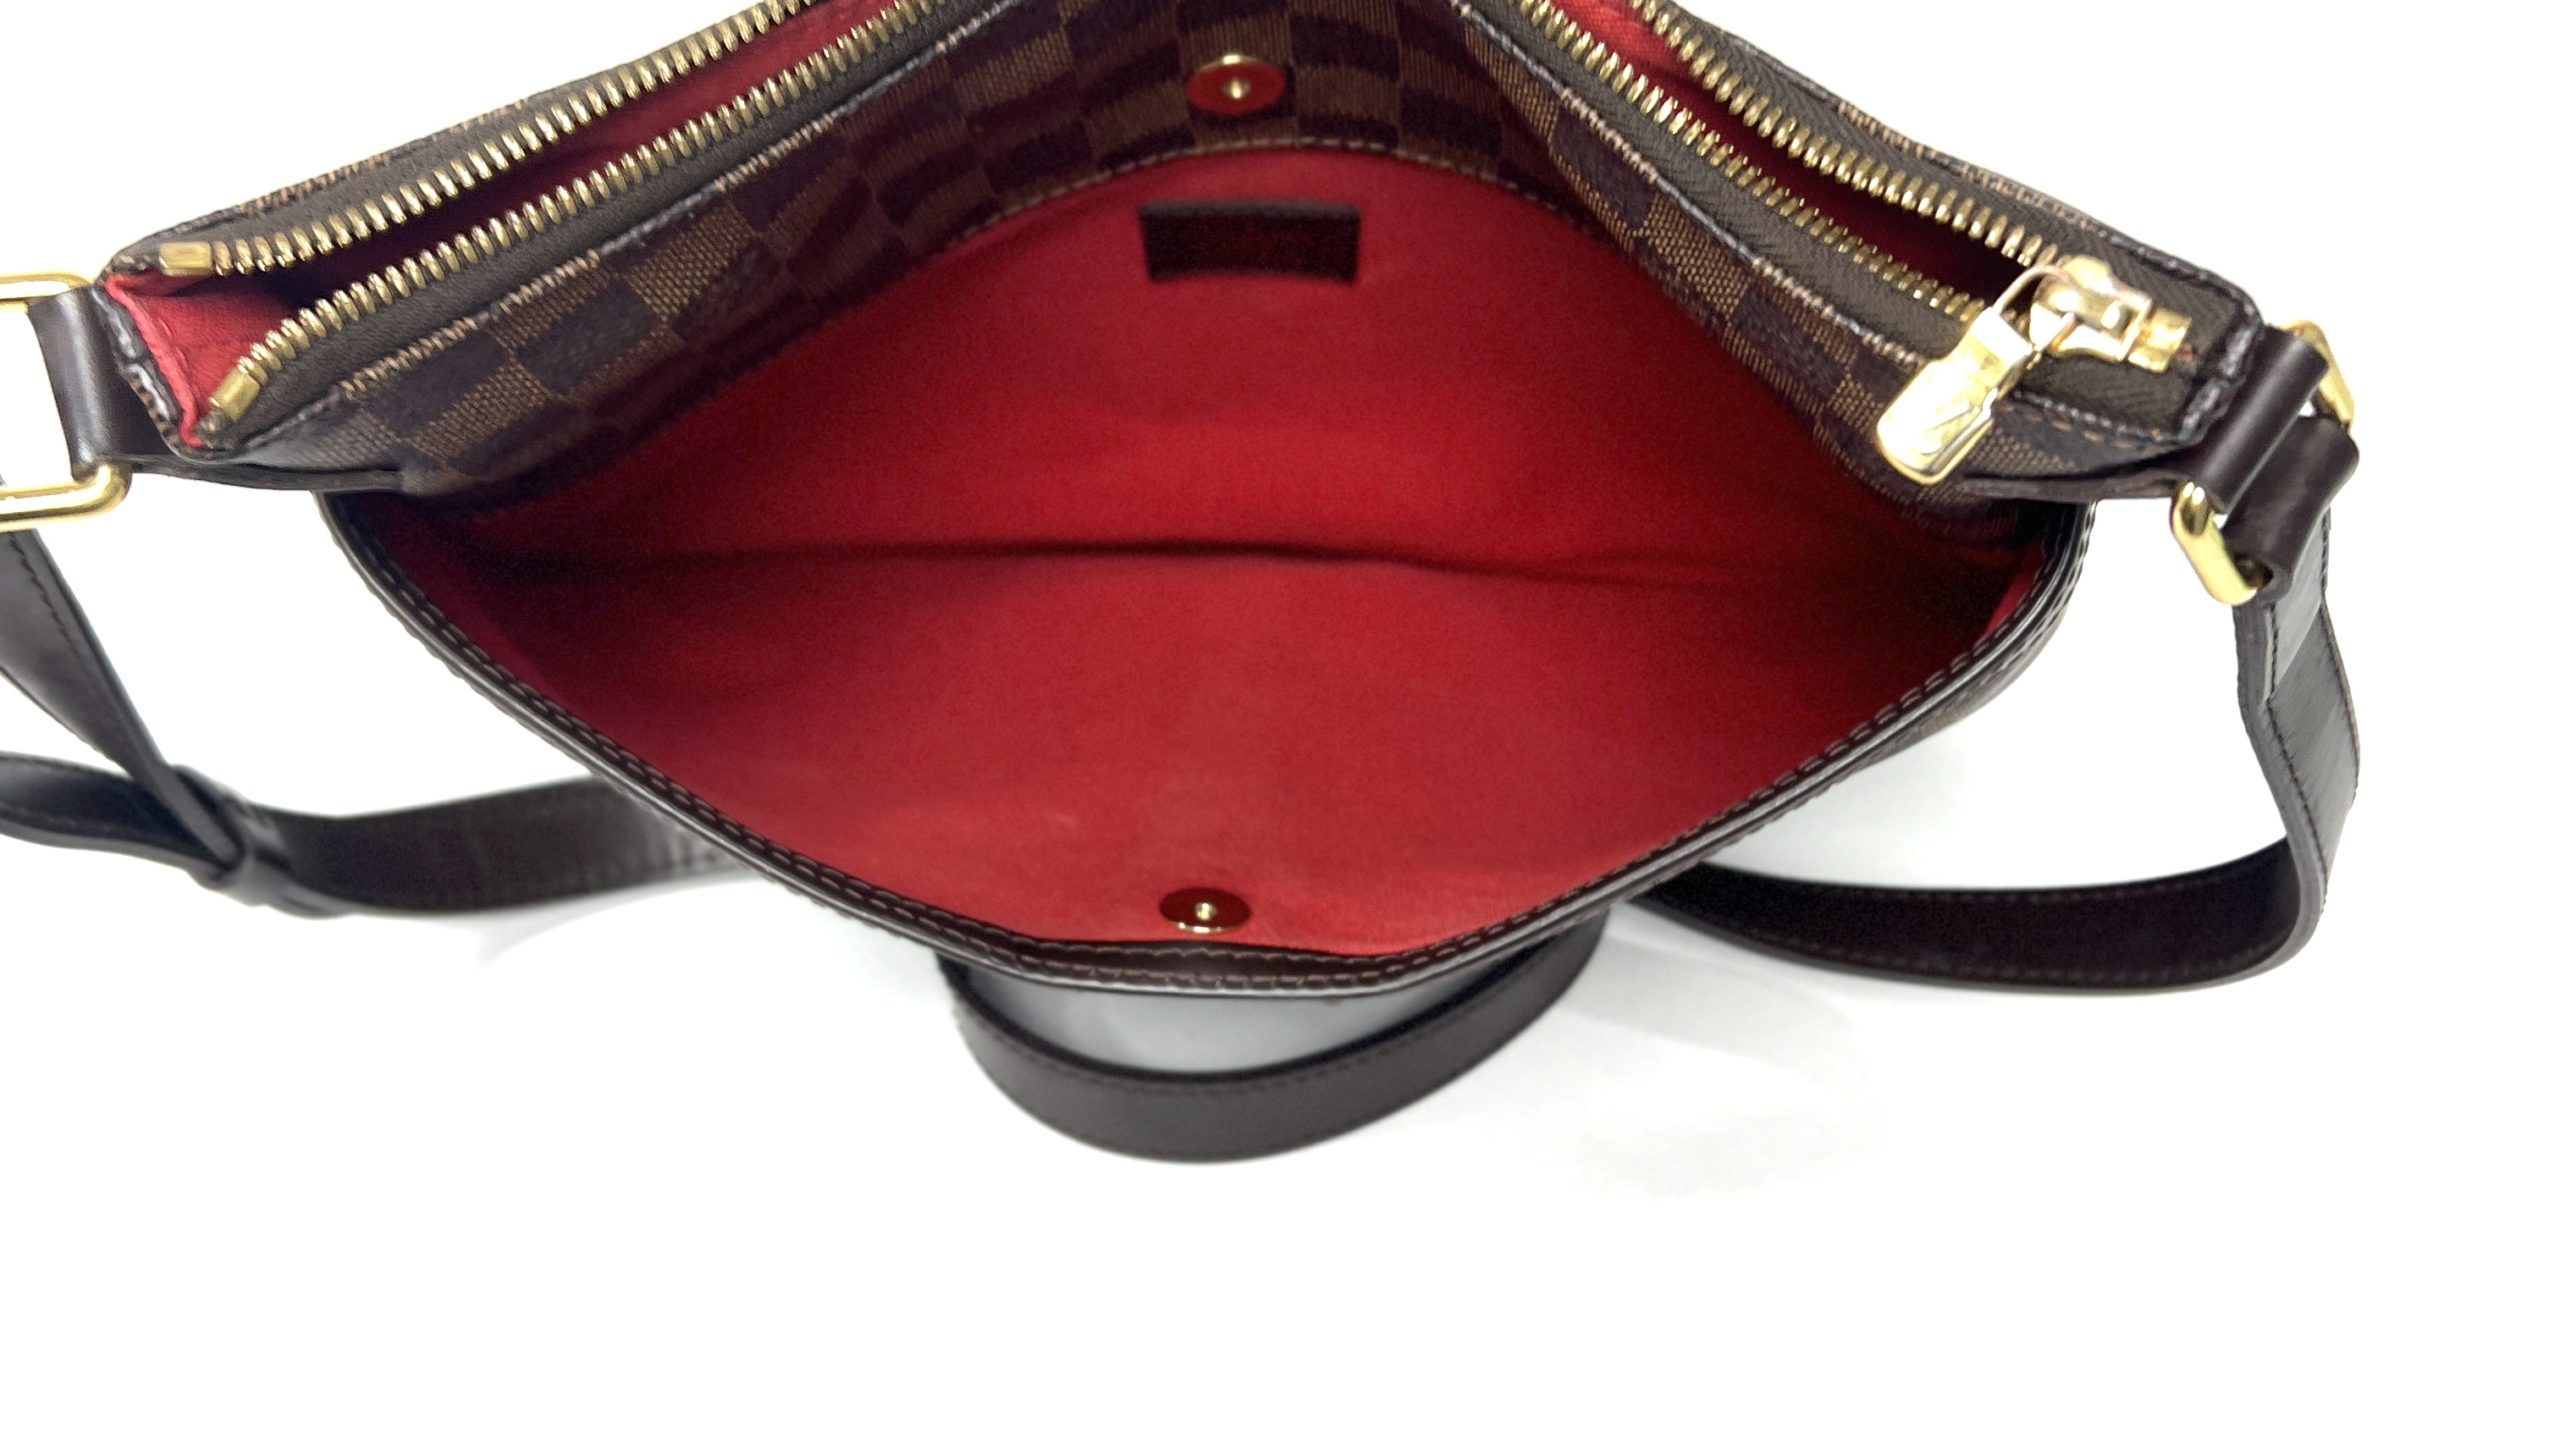 Leather Adjustable Crossbody Bag Strap - For lv Ebene Shoulder